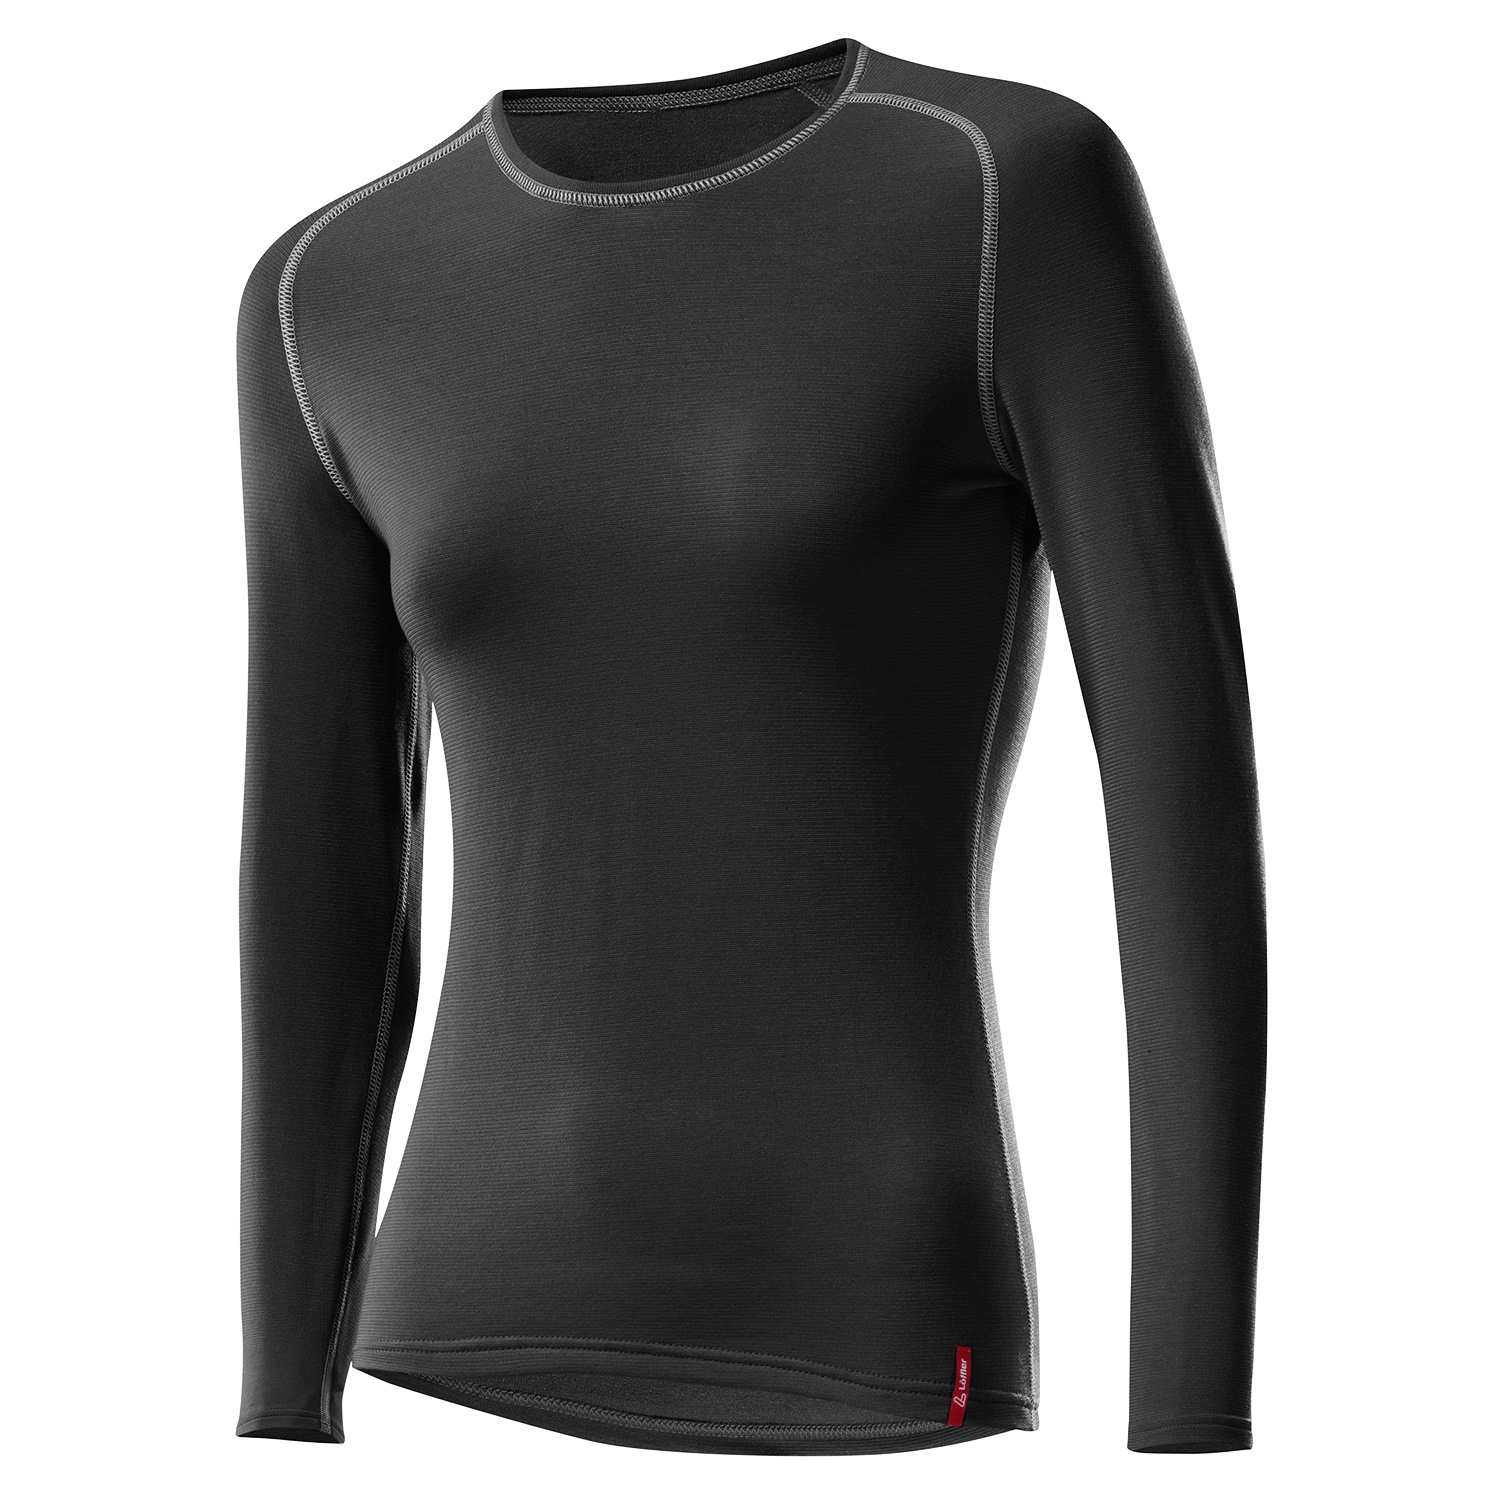 Produktbild von Löffler Transtex Warm Damen Langarm-Unterhemd - schwarz 990